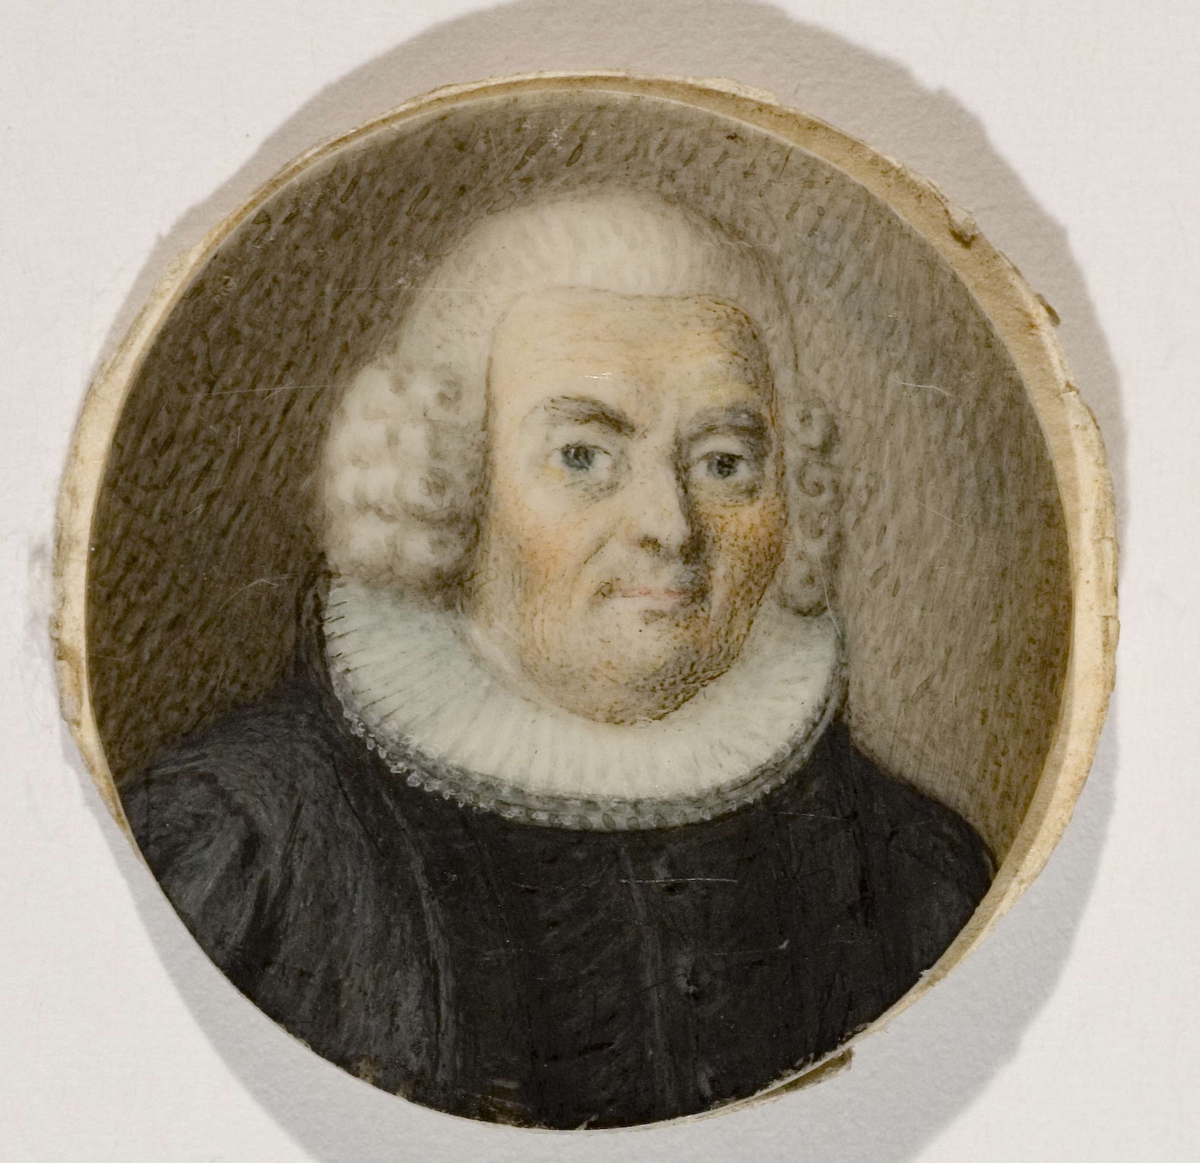 Eldre mann i geistlig embetsdrakt. Brystbilde. Ant. biskop Christen Schmidt, biskop i Oslo bispedømme fra 1727 til 1804.